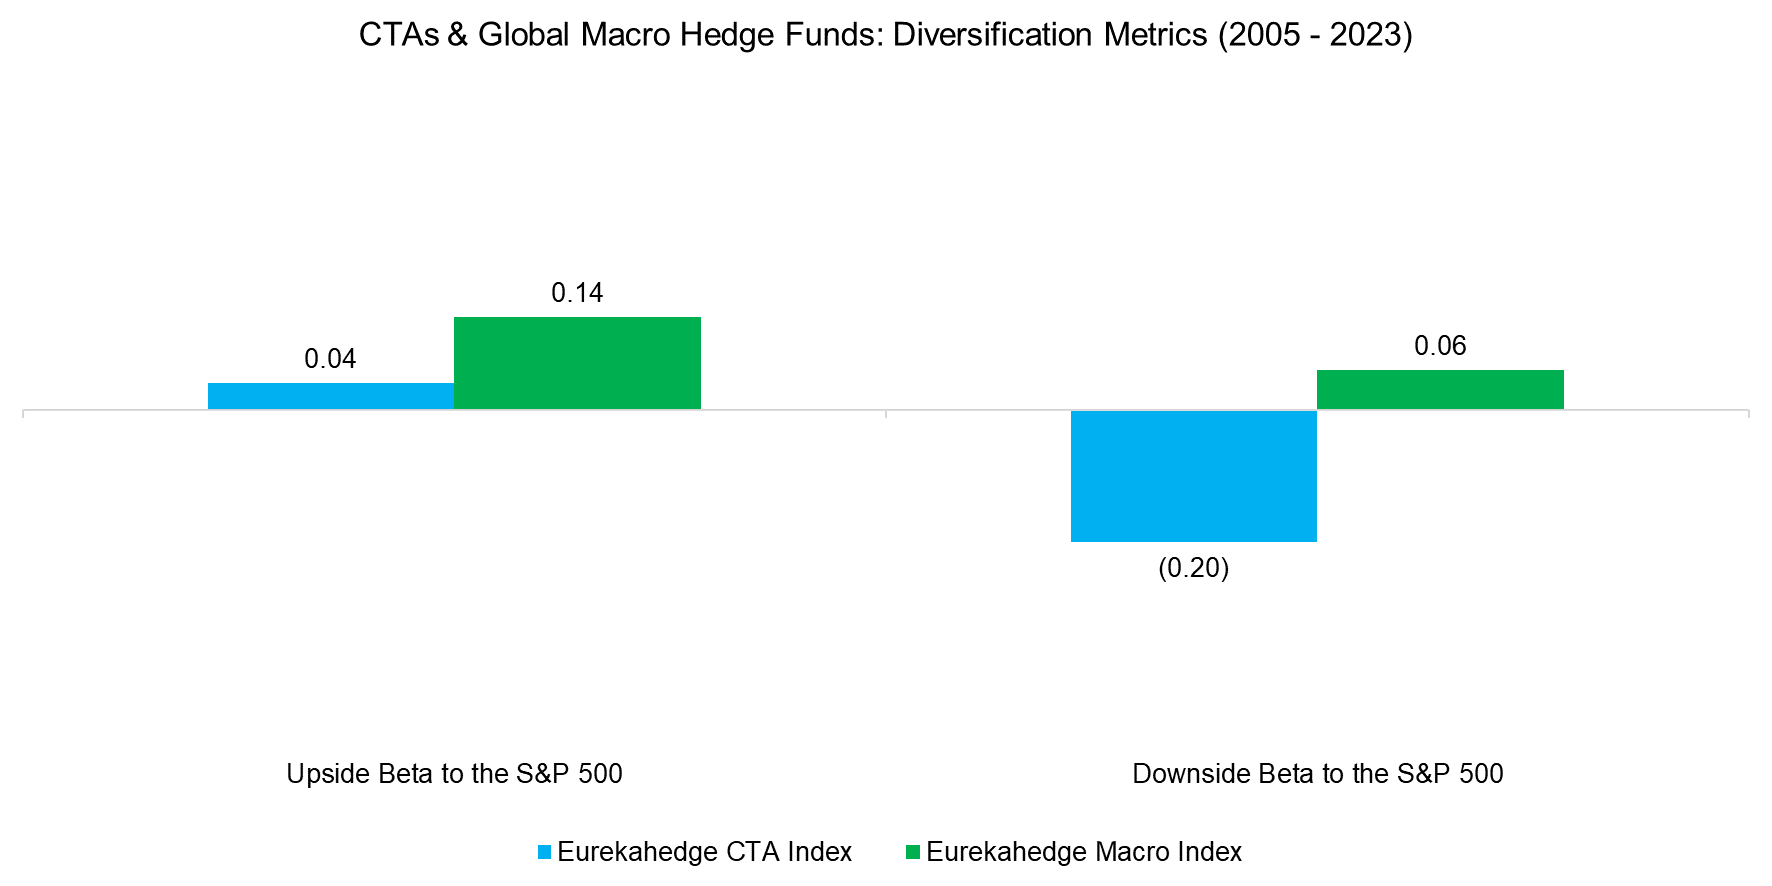 CTAs & Global Macro Hedge Funds Diversification Metrics (2005 - 2023)